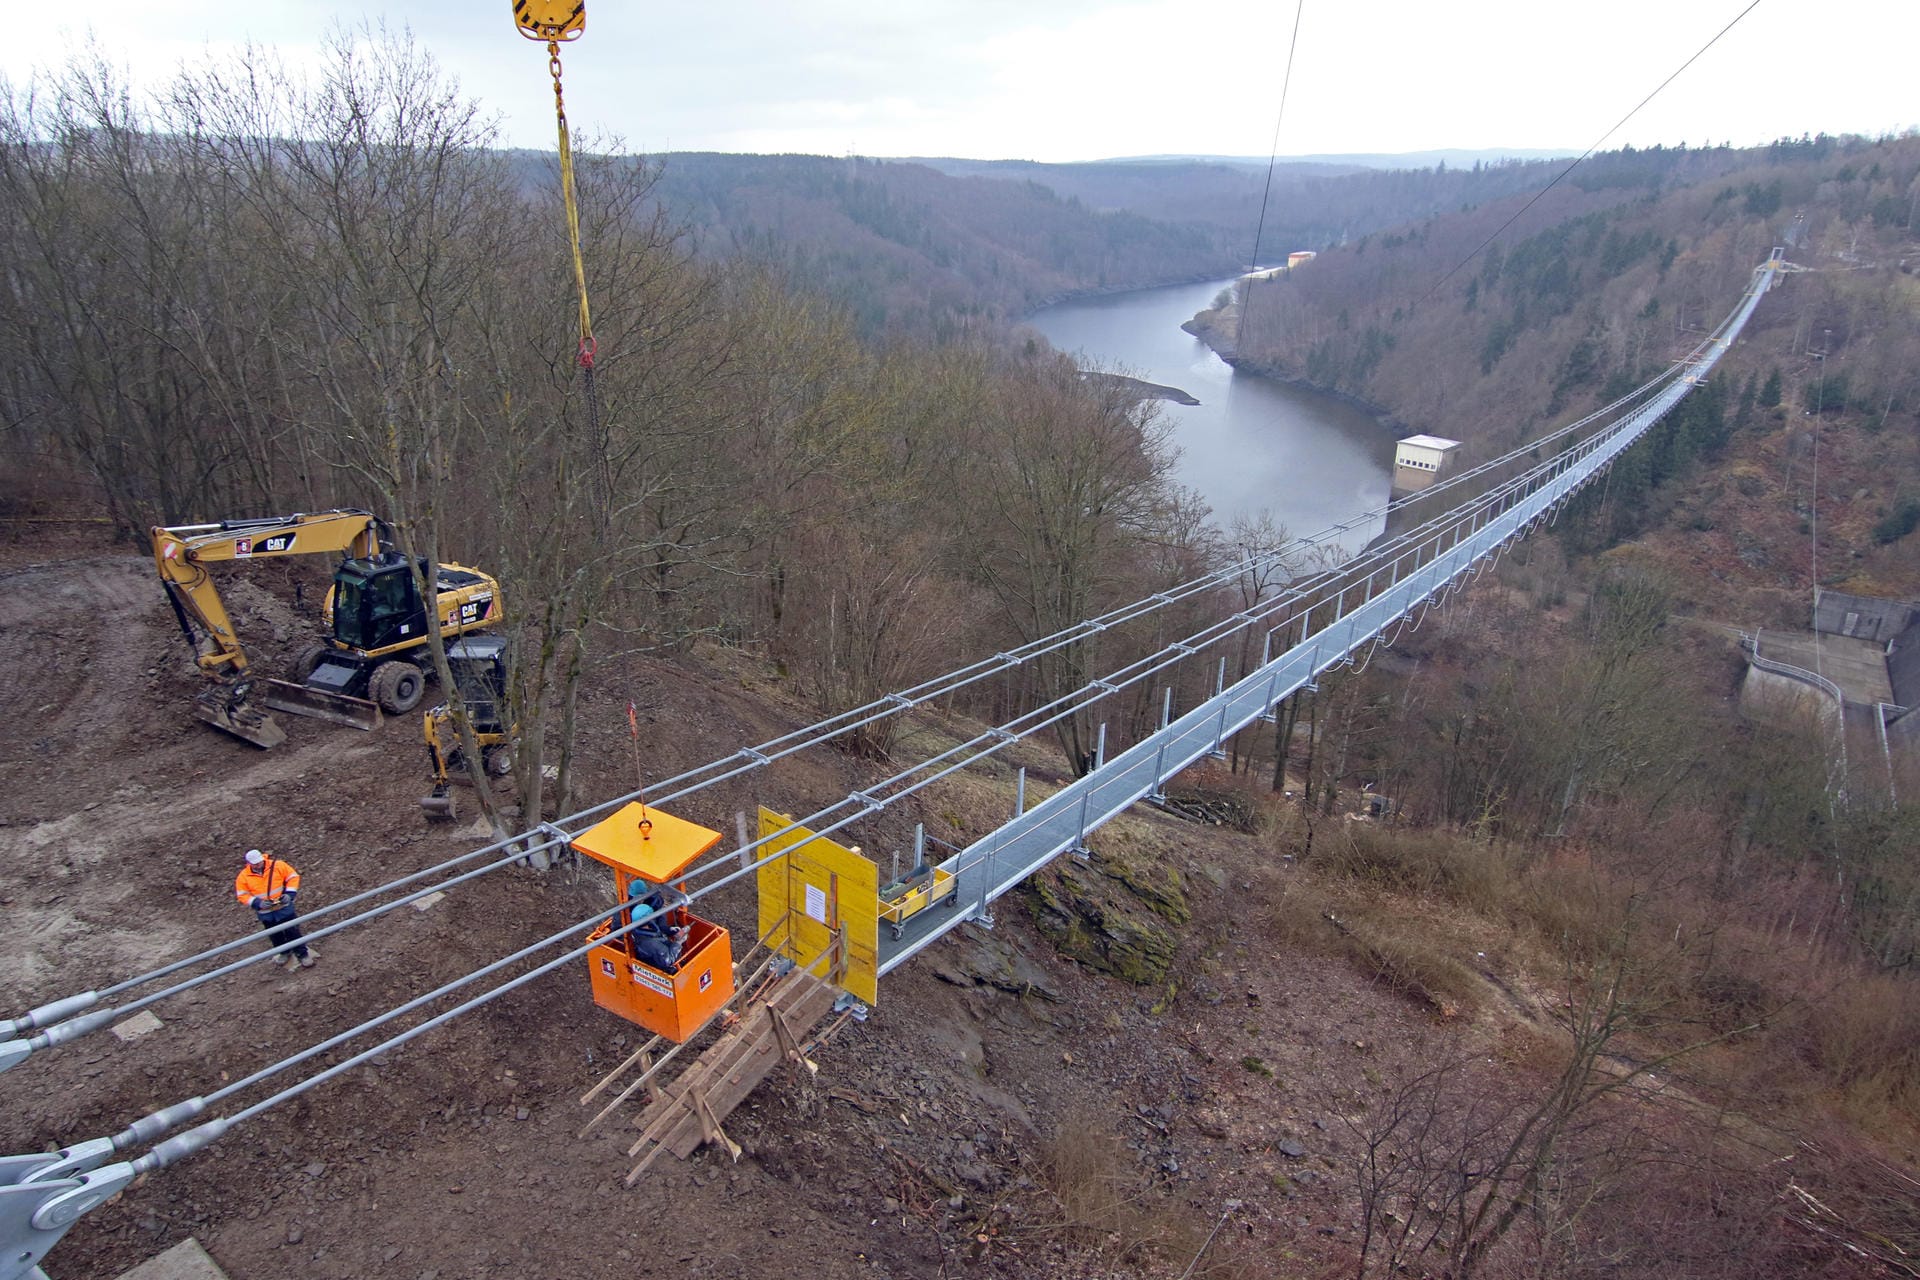 Eröffnung der Harzer Seilhängebrücke - Betreiber verraten Länge